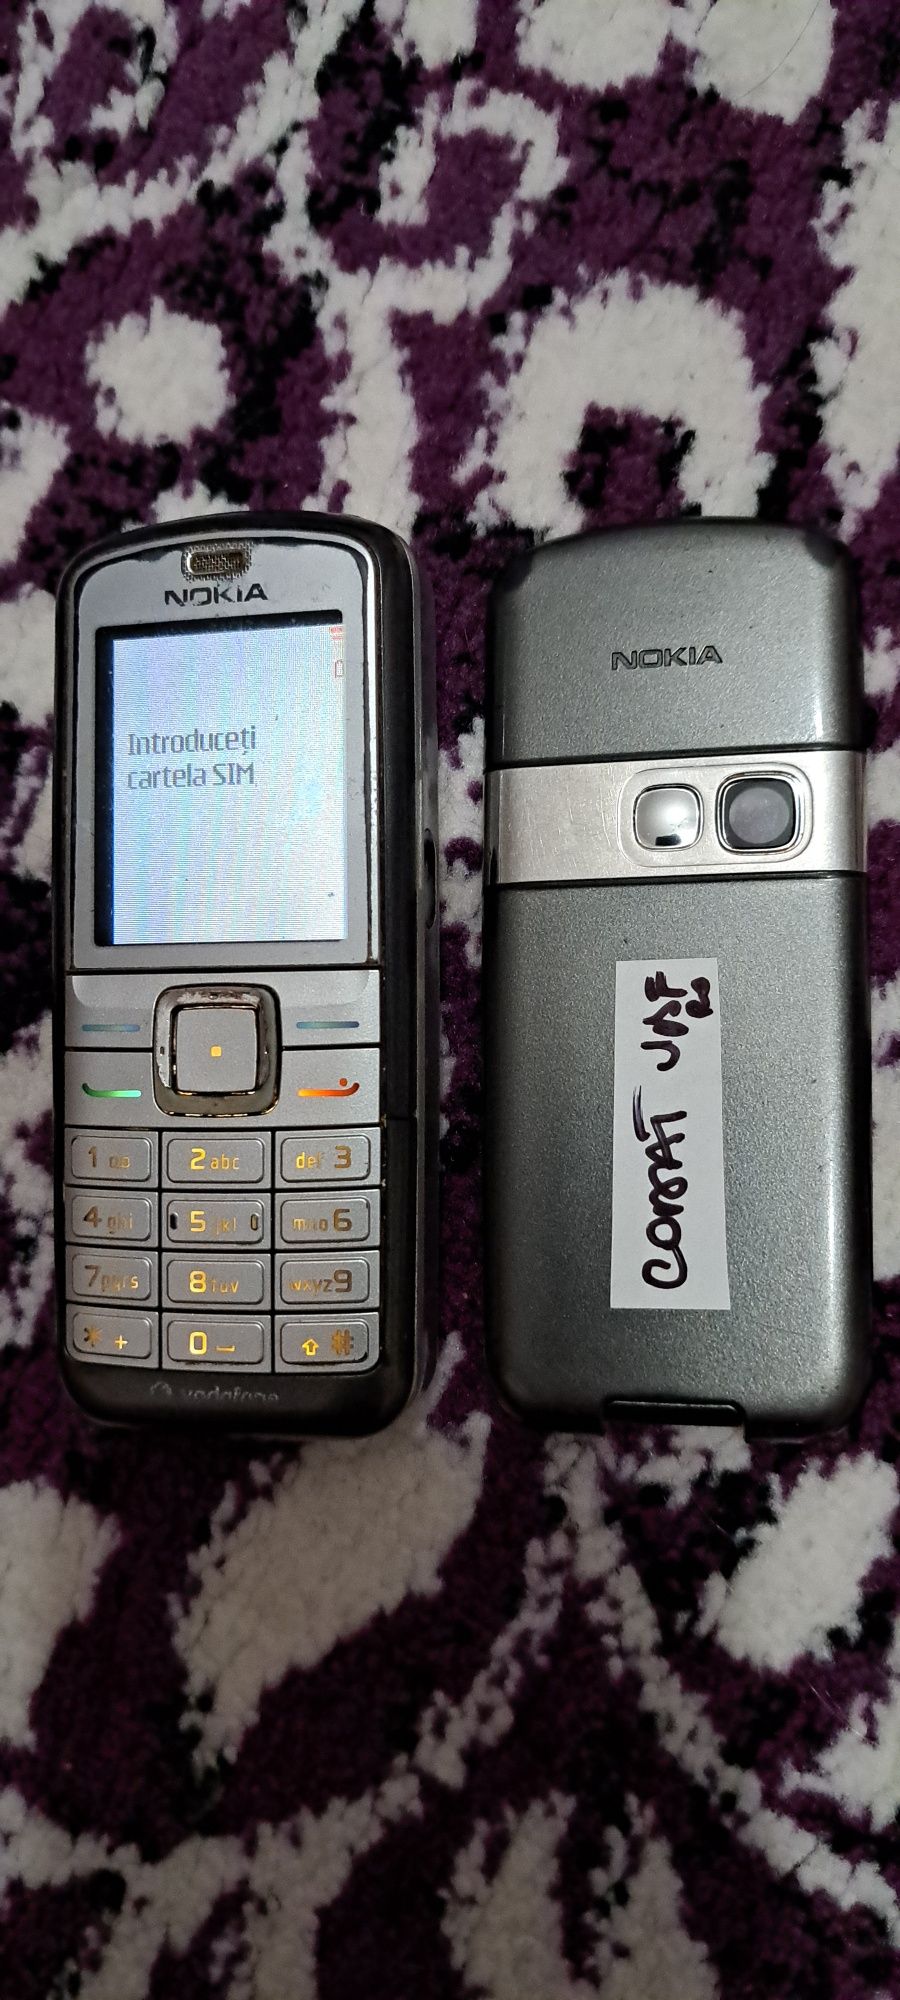 Nokia 6070 Vodafone